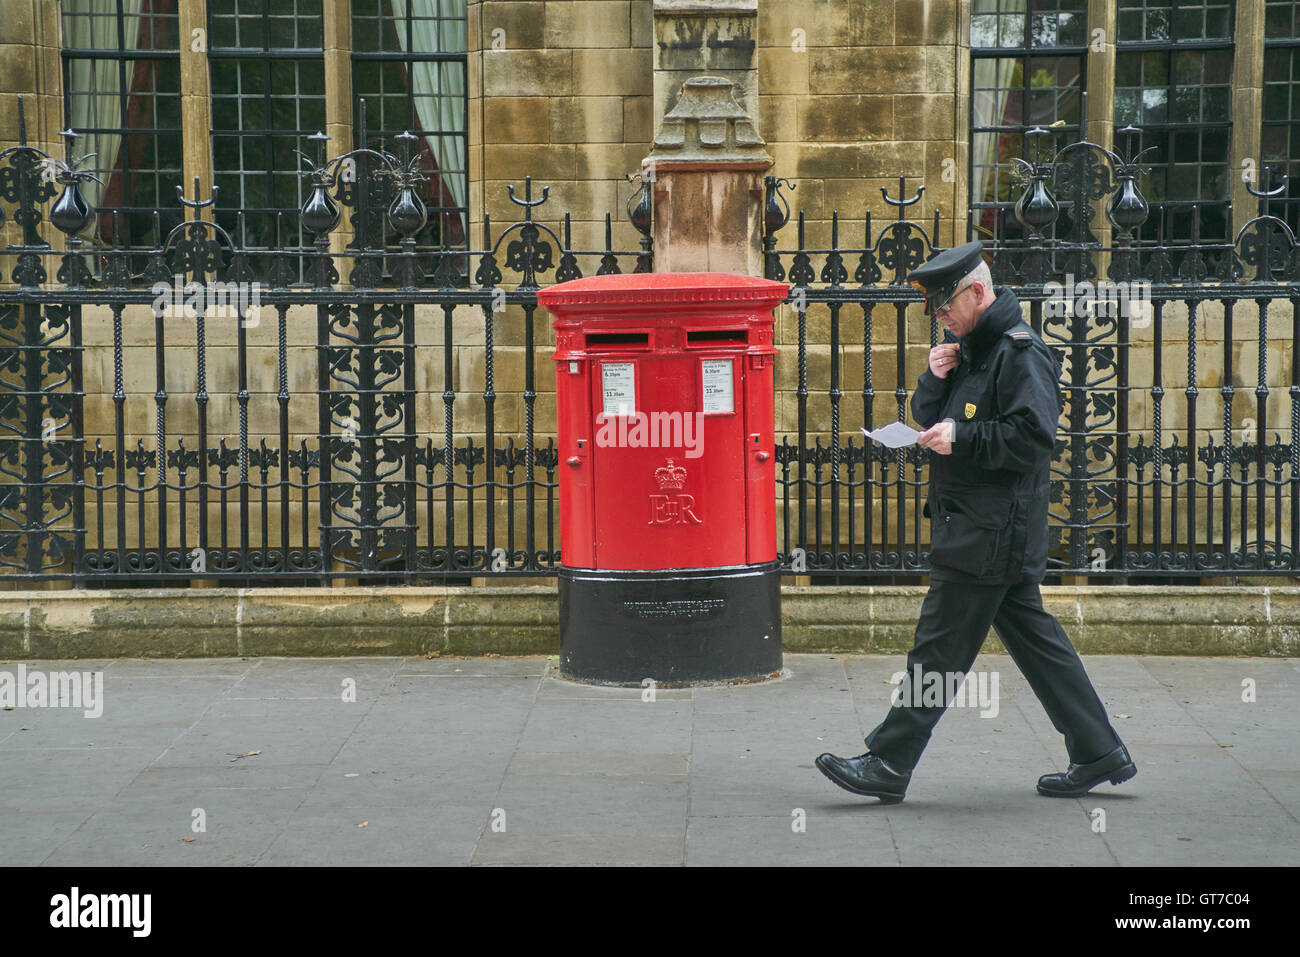 Boite aux lettres rouge, Londres. Boîte aux lettres Mail Royal Banque D'Images